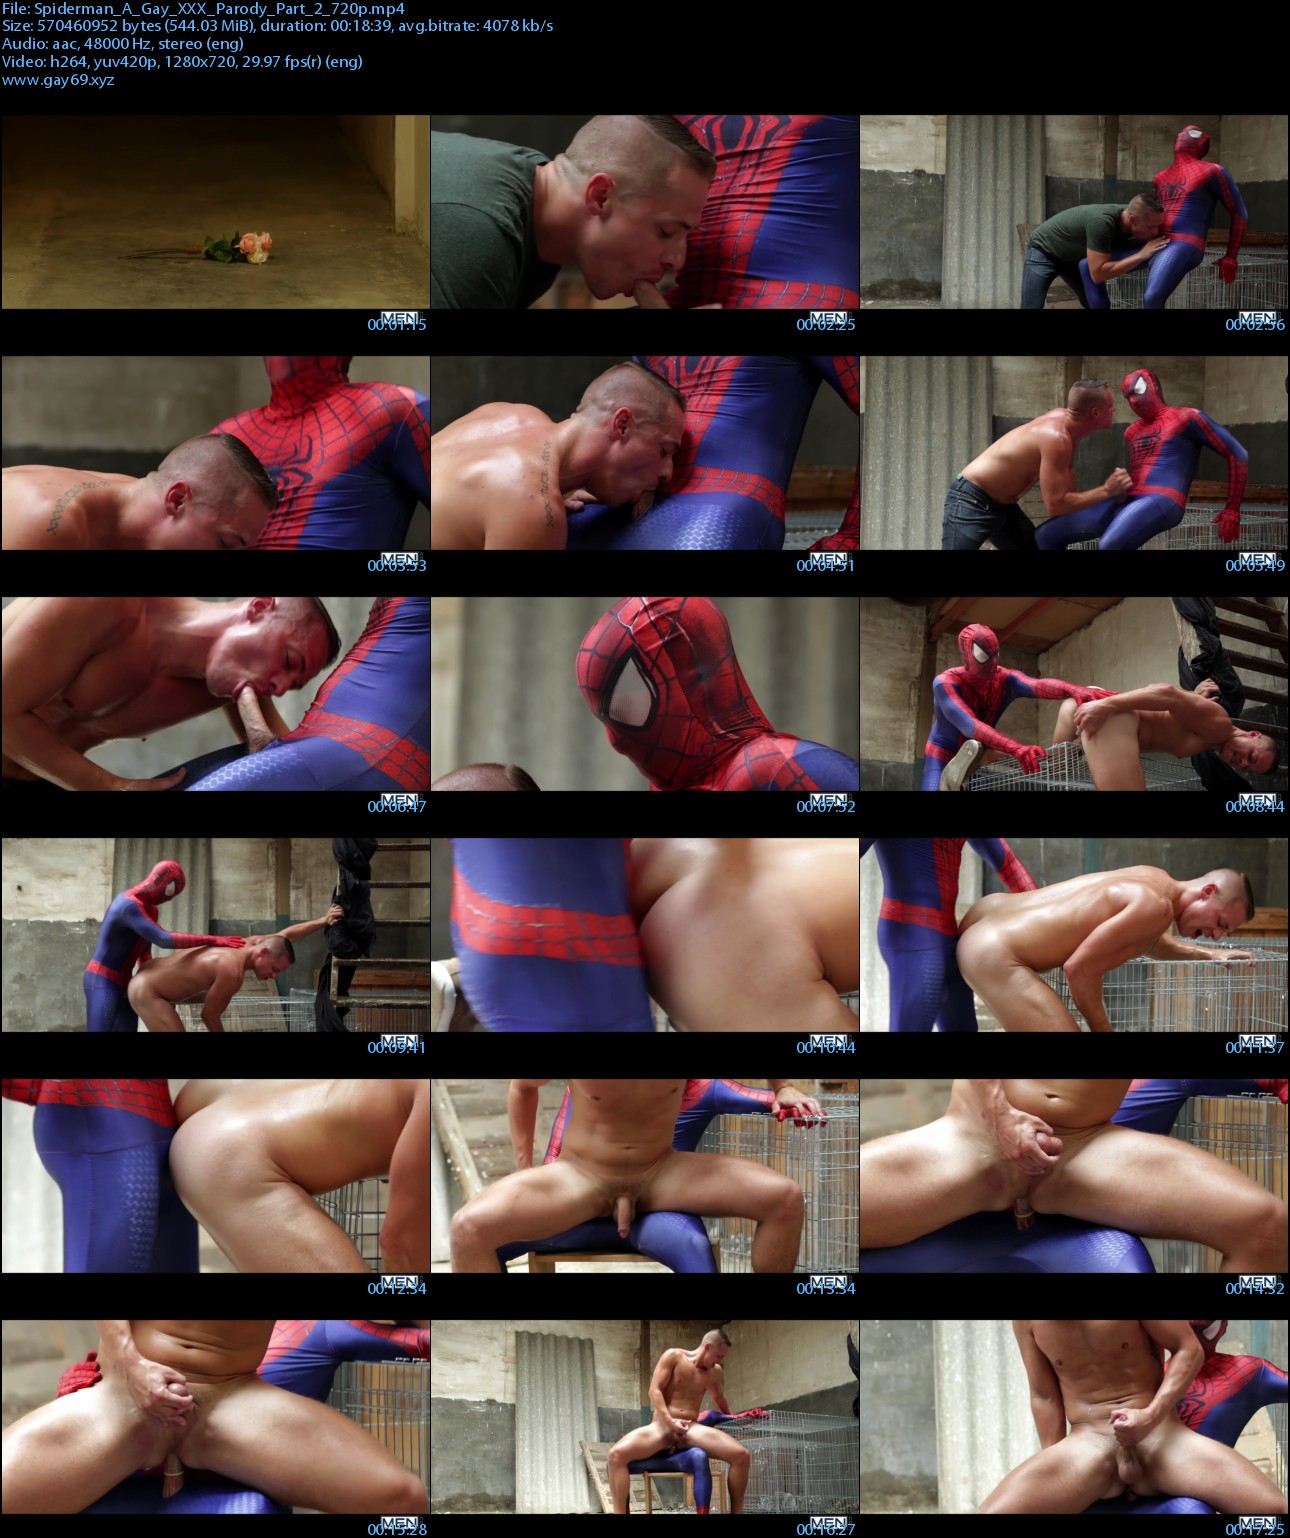 Spiderman_A_Gay_XXX_Parody_Part_2_720p_s.jpg